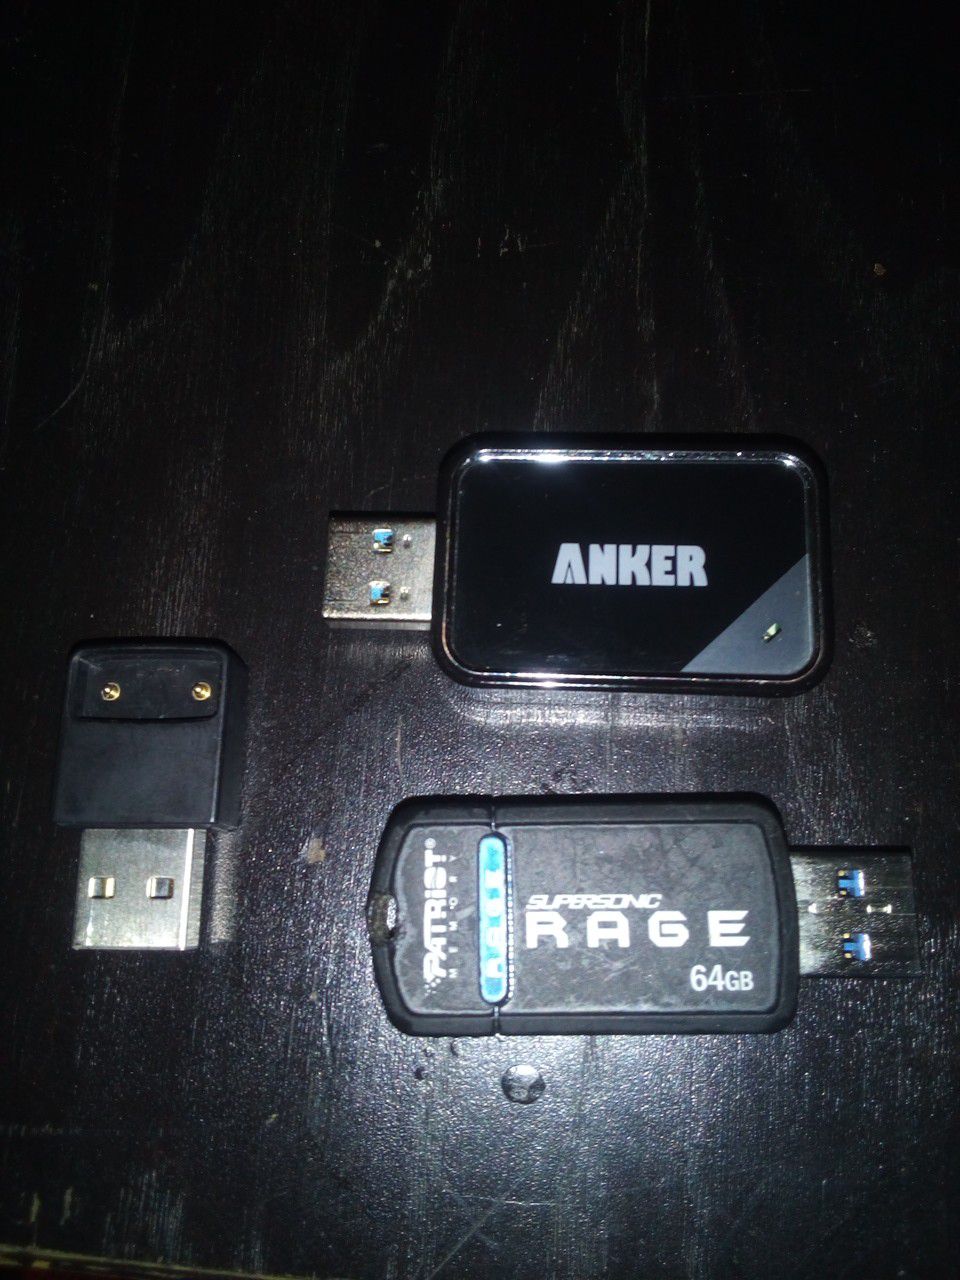 USB storage accessories